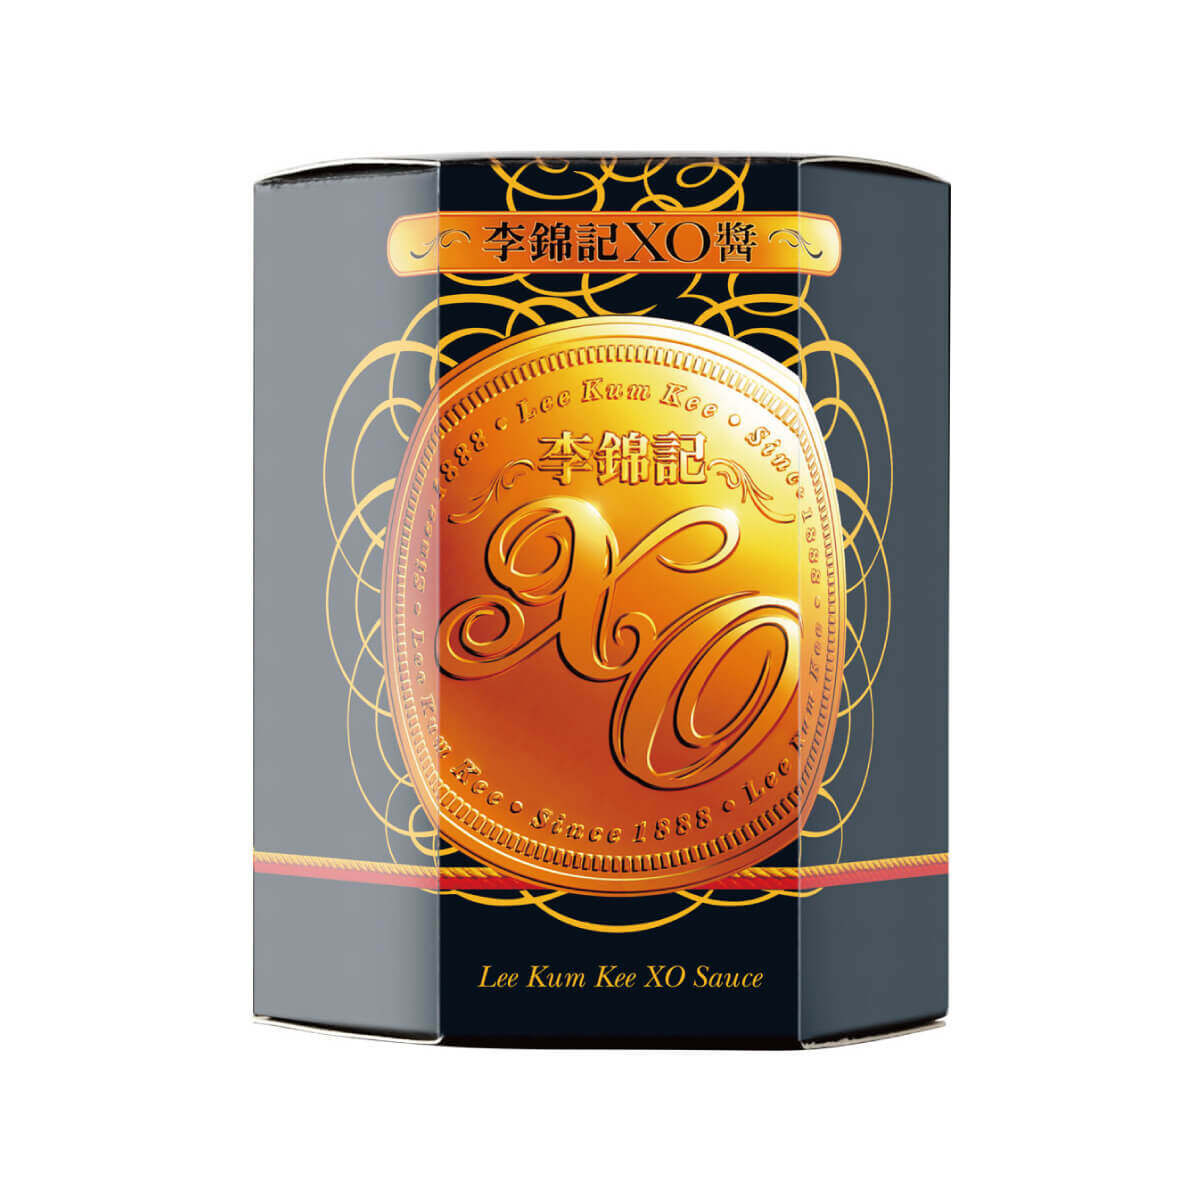 Sambal Surinaams Sauce | SPICE IT | 200g